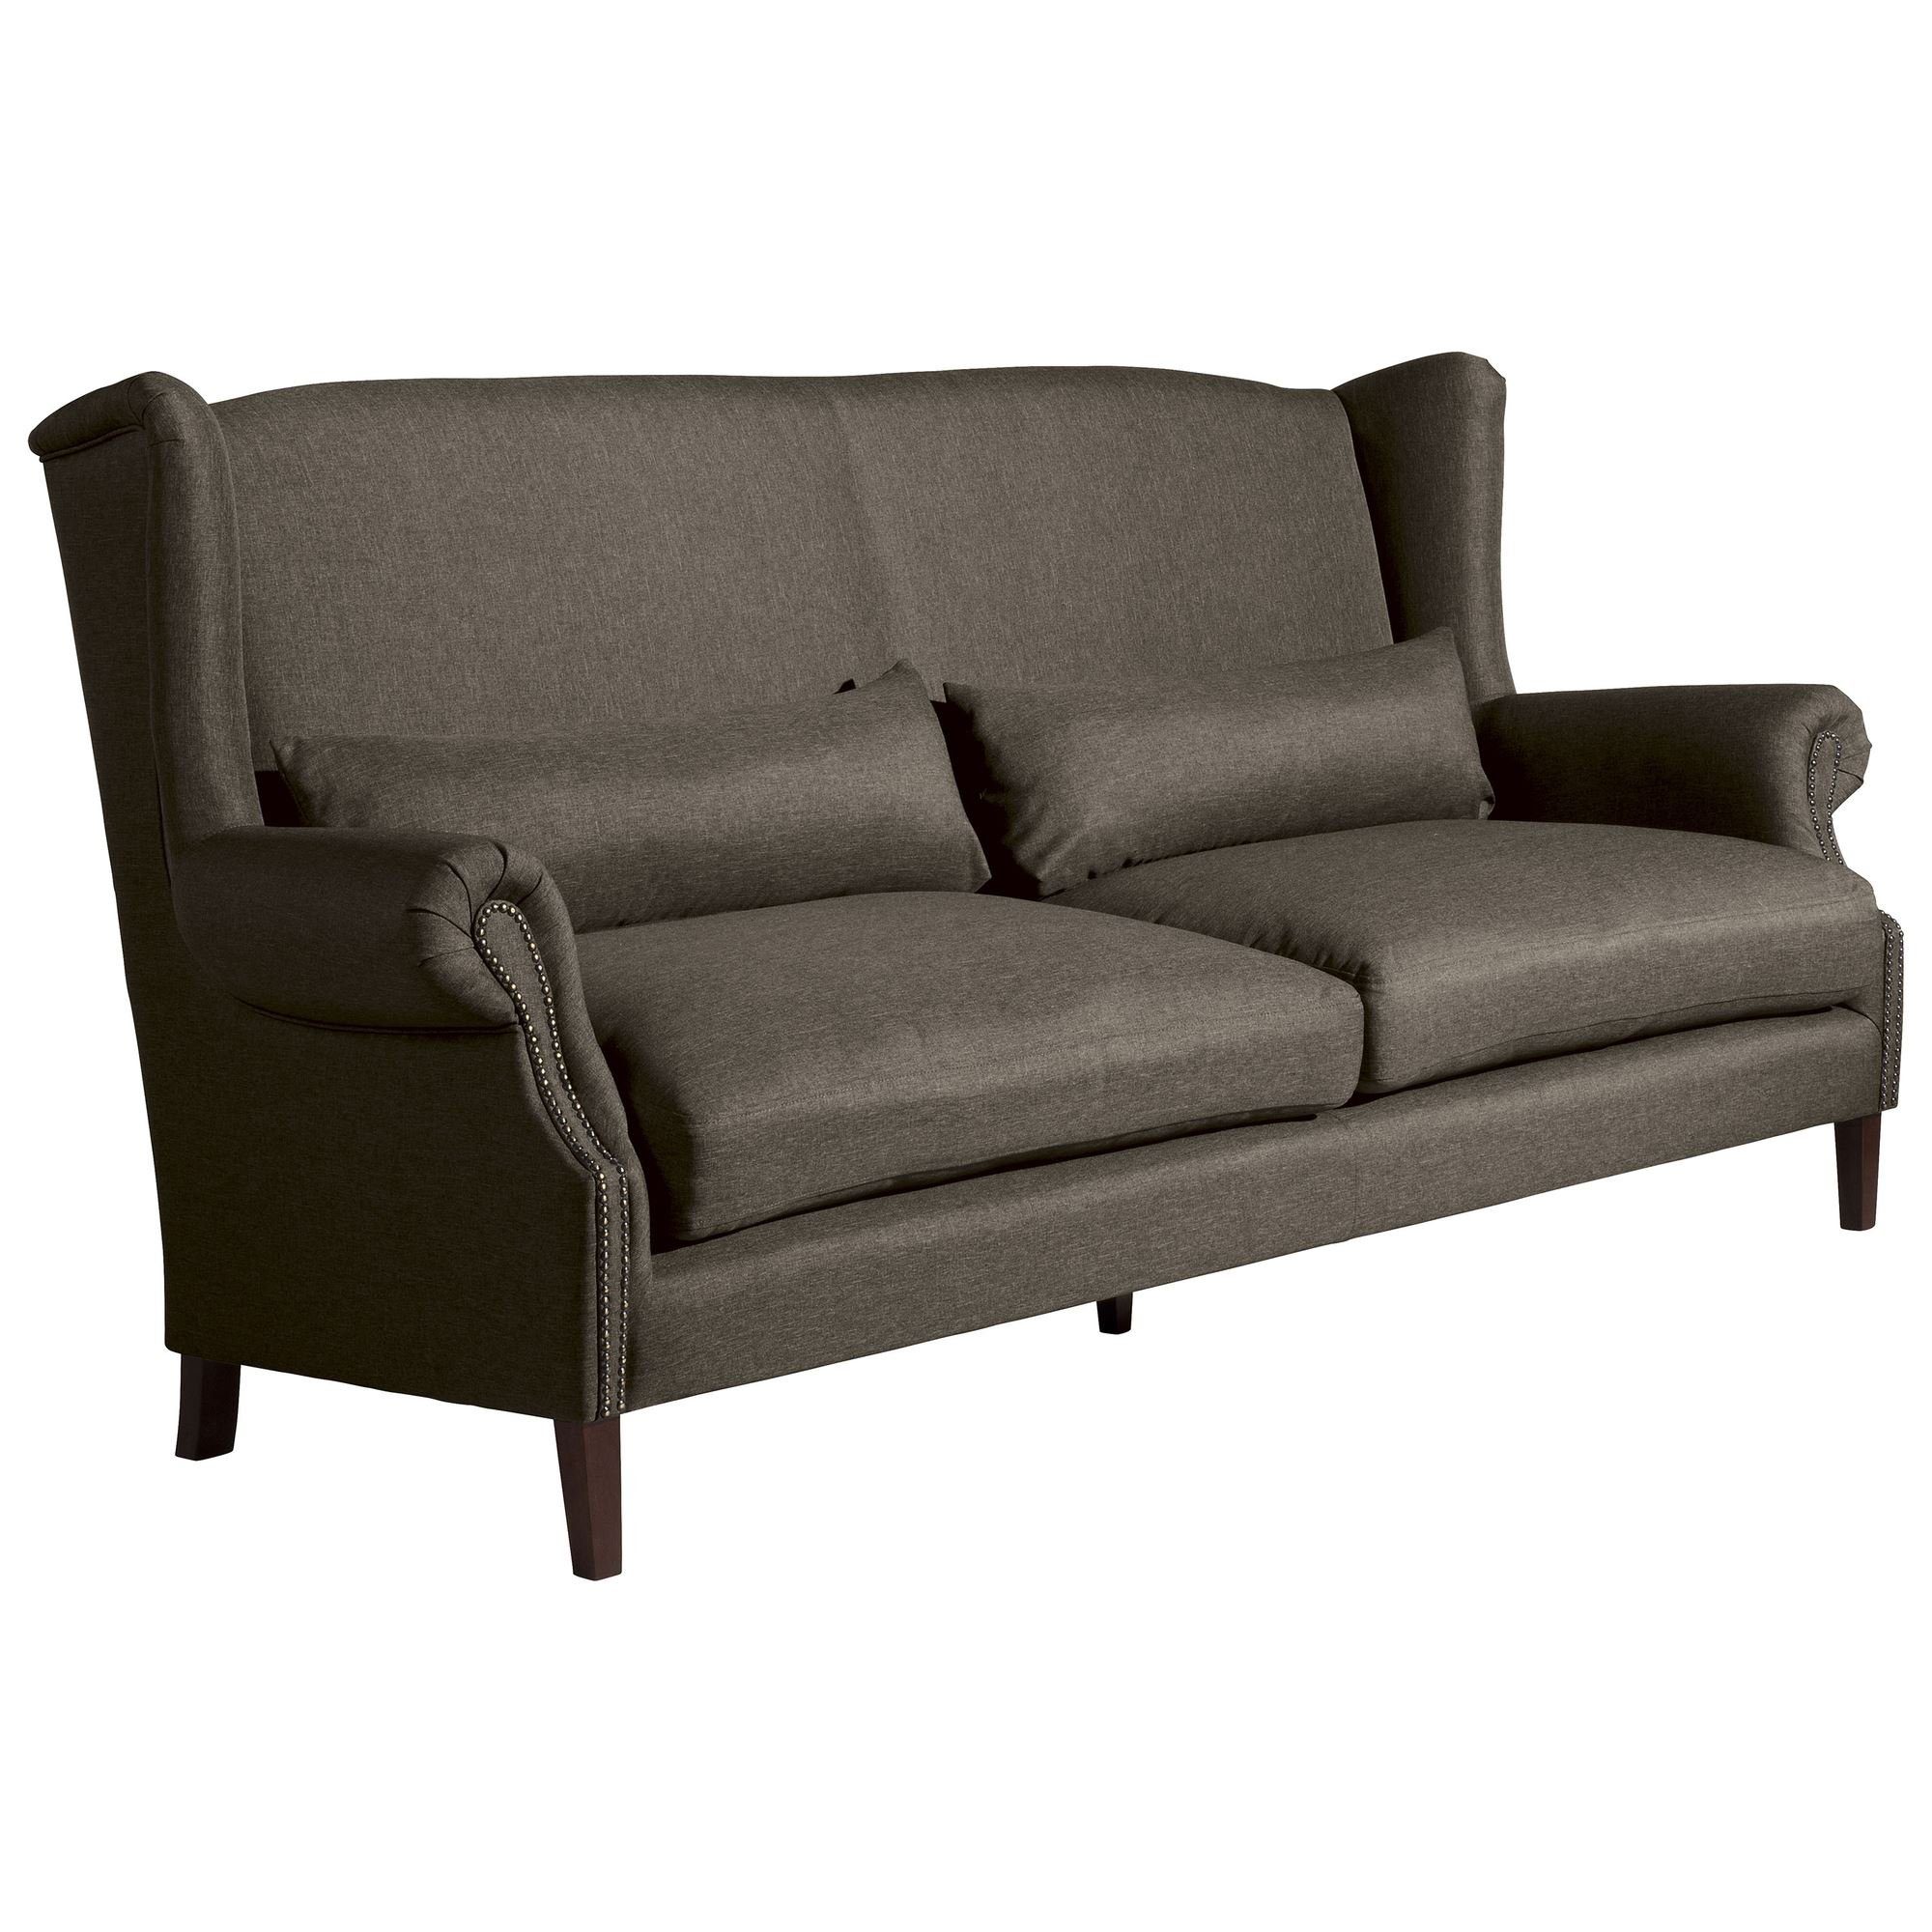 Sofa Kostenlosem Sparpreis Sofa Teile, aufm 58 3-Sitzer Flachgewebe, 1 Bezug (2-geteilt) verarbeitet,bequemer Versand Kandy hochwertig Kessel Sitz inkl.